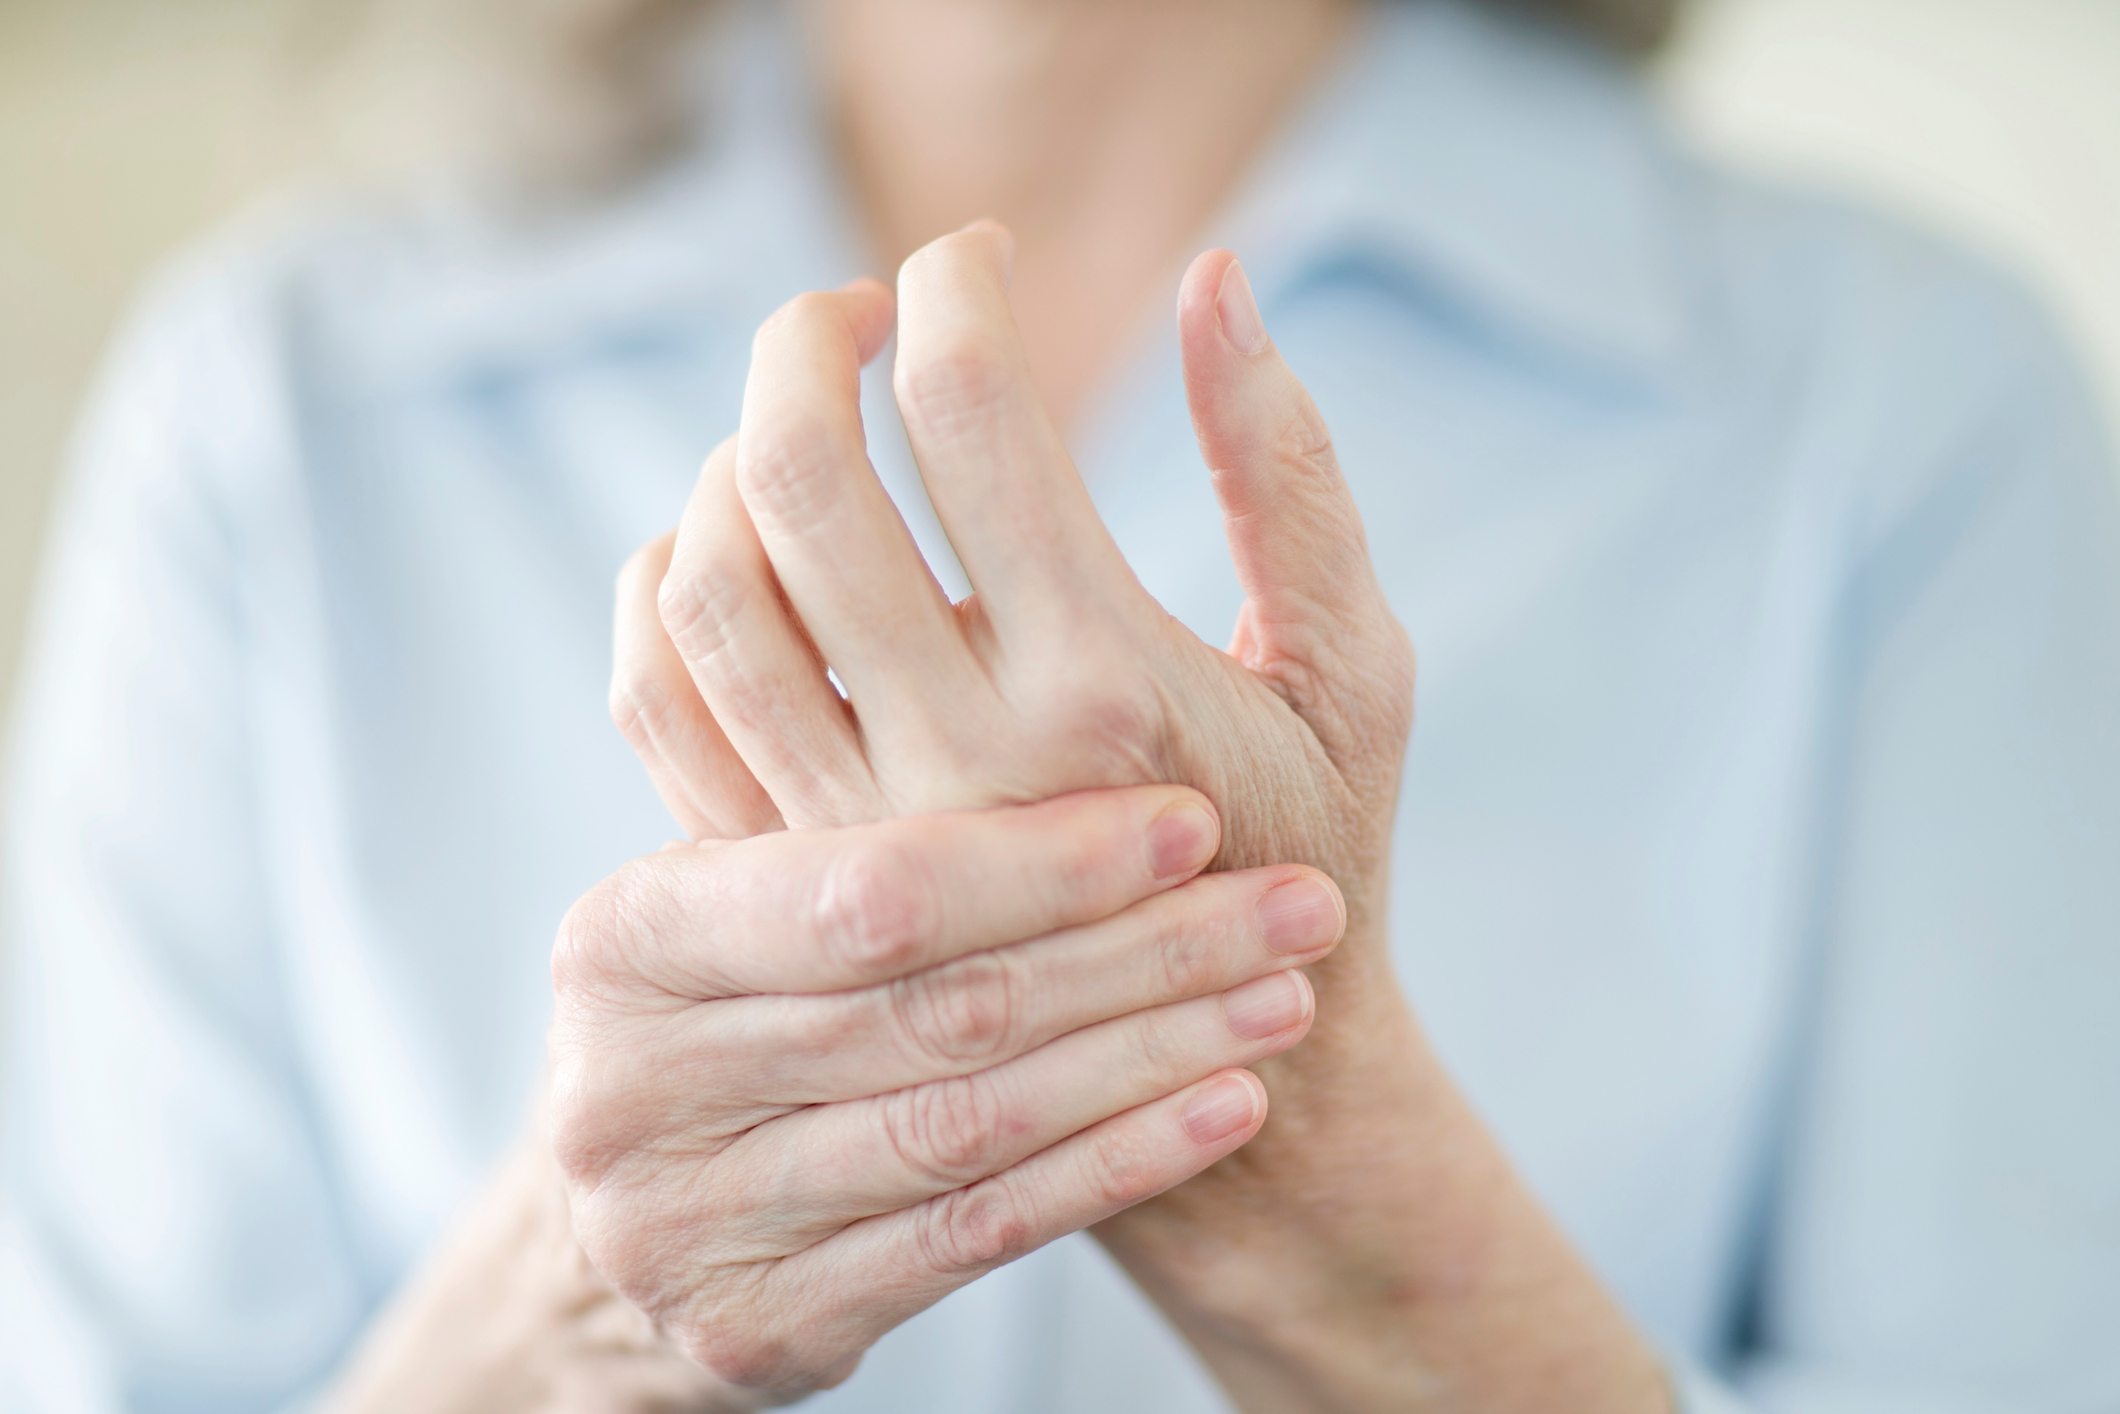 خدر (تنميل) اليدين: الأسباب والعلاج - شعور الخدر (التنميل) في اليدين، الذي قد يترافق مع الشعور بالضعف والوخز المؤلم - الوخز في إحدى الذراعين